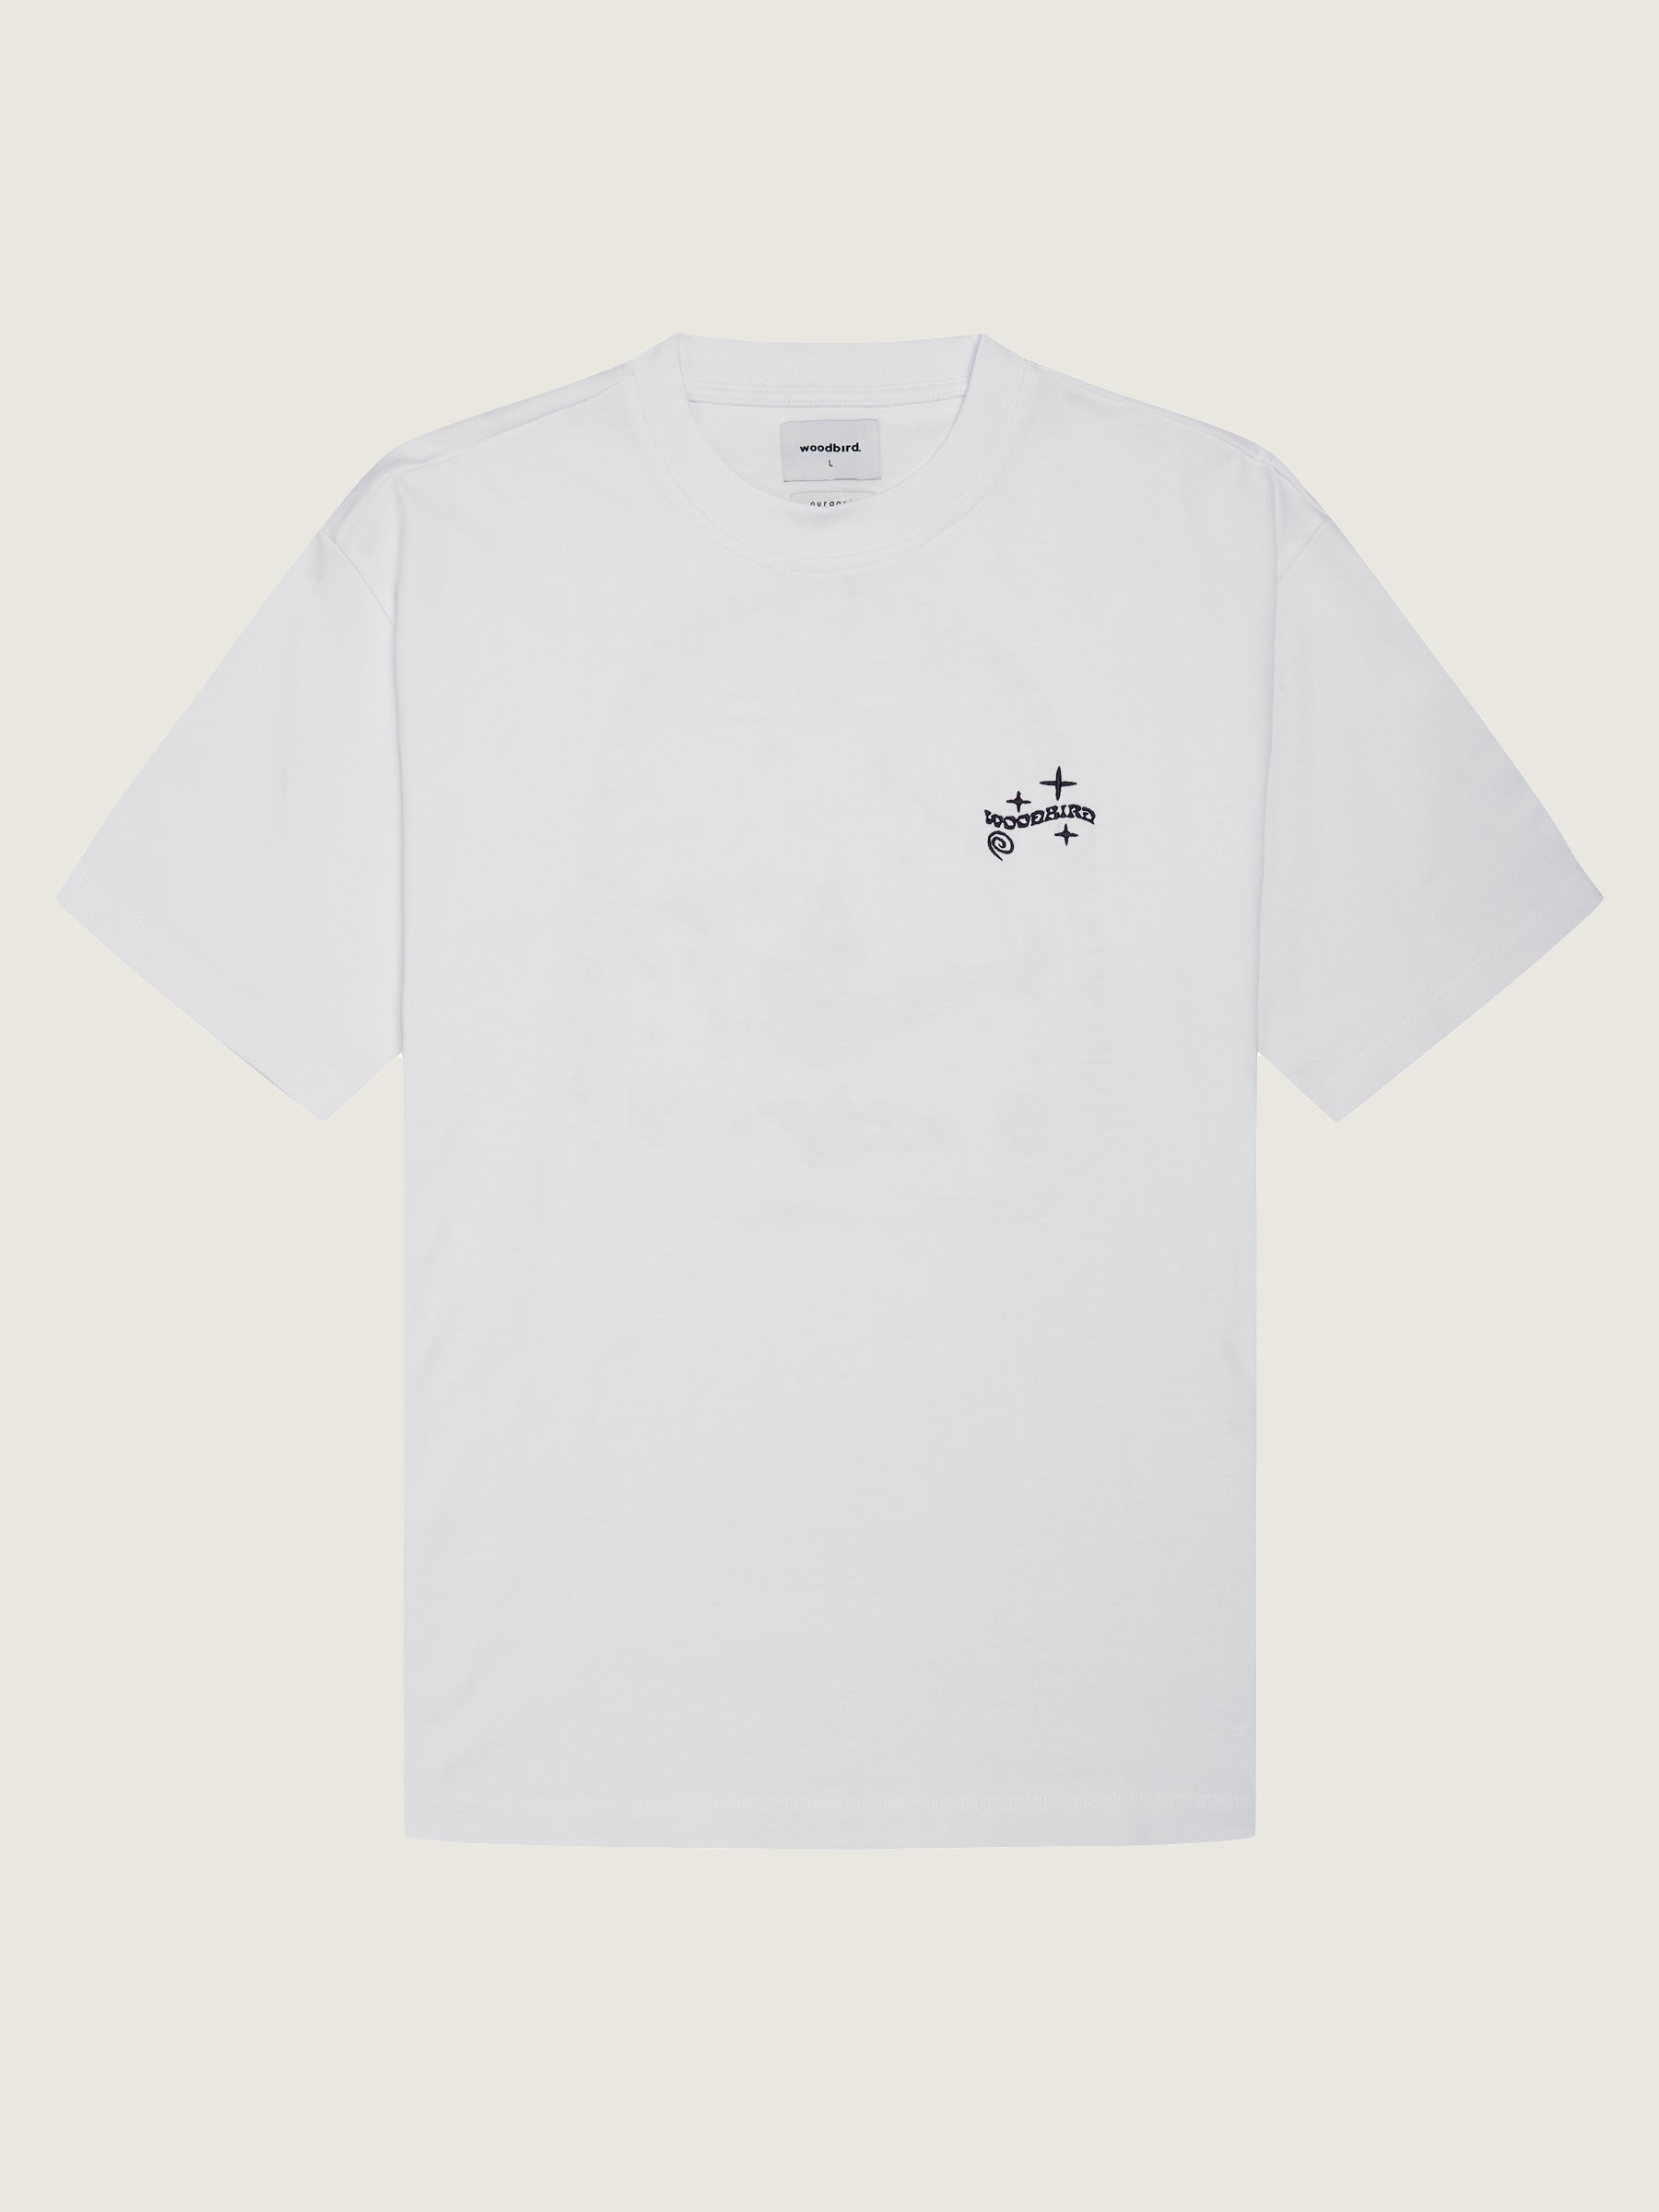 Woodbird Baine Wish Tee T-Shirts White